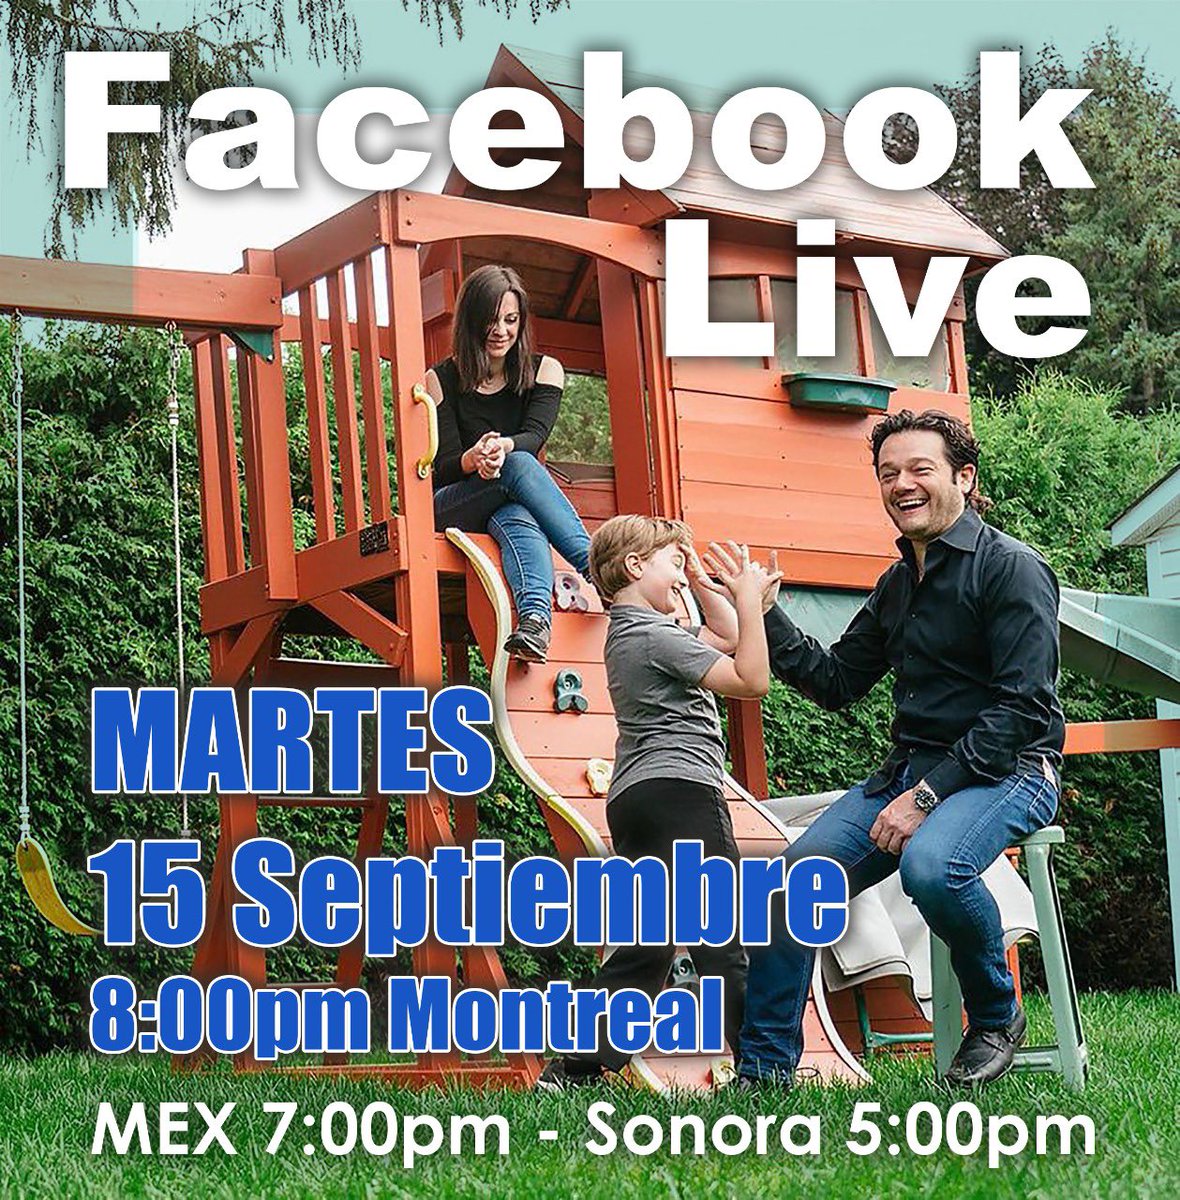 Estamos felices de anunciar el próximo Facebook Live. 
Nos vemos el 15 de septiembre para dar el grito de independencia🇲🇽cantando. 
También darles una bonita sorpresa musical. 🎶😊👇
Facebook.com/arturochaconcr…